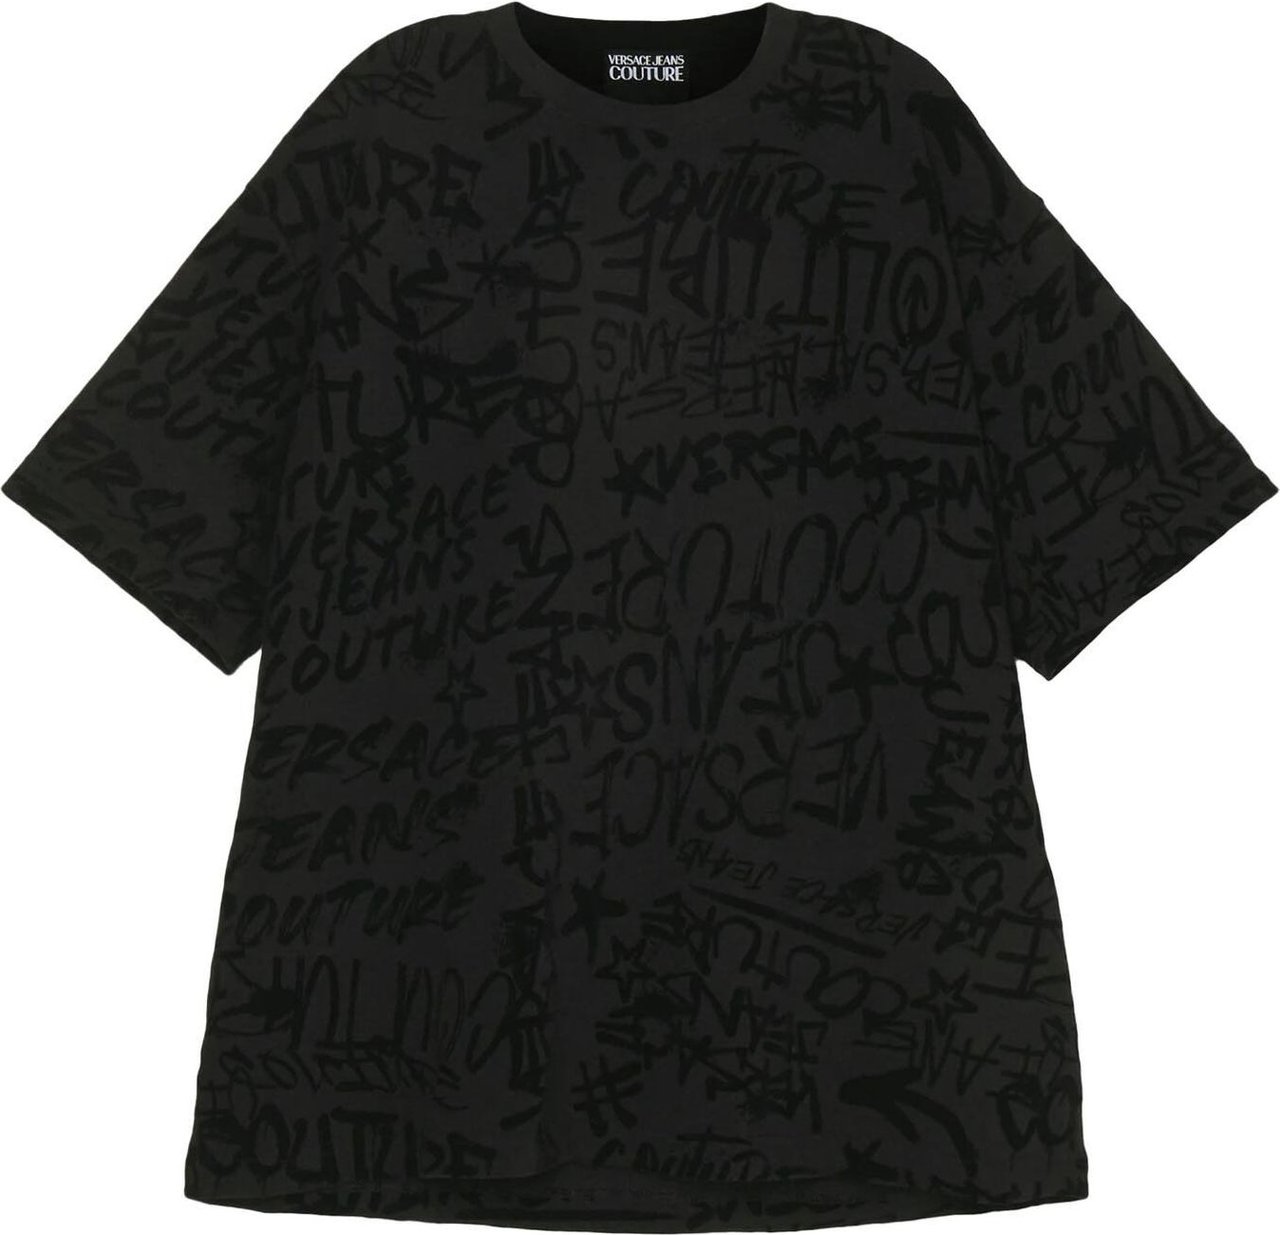 Versace Jeans Couture T-Shirt Zwart Zwart